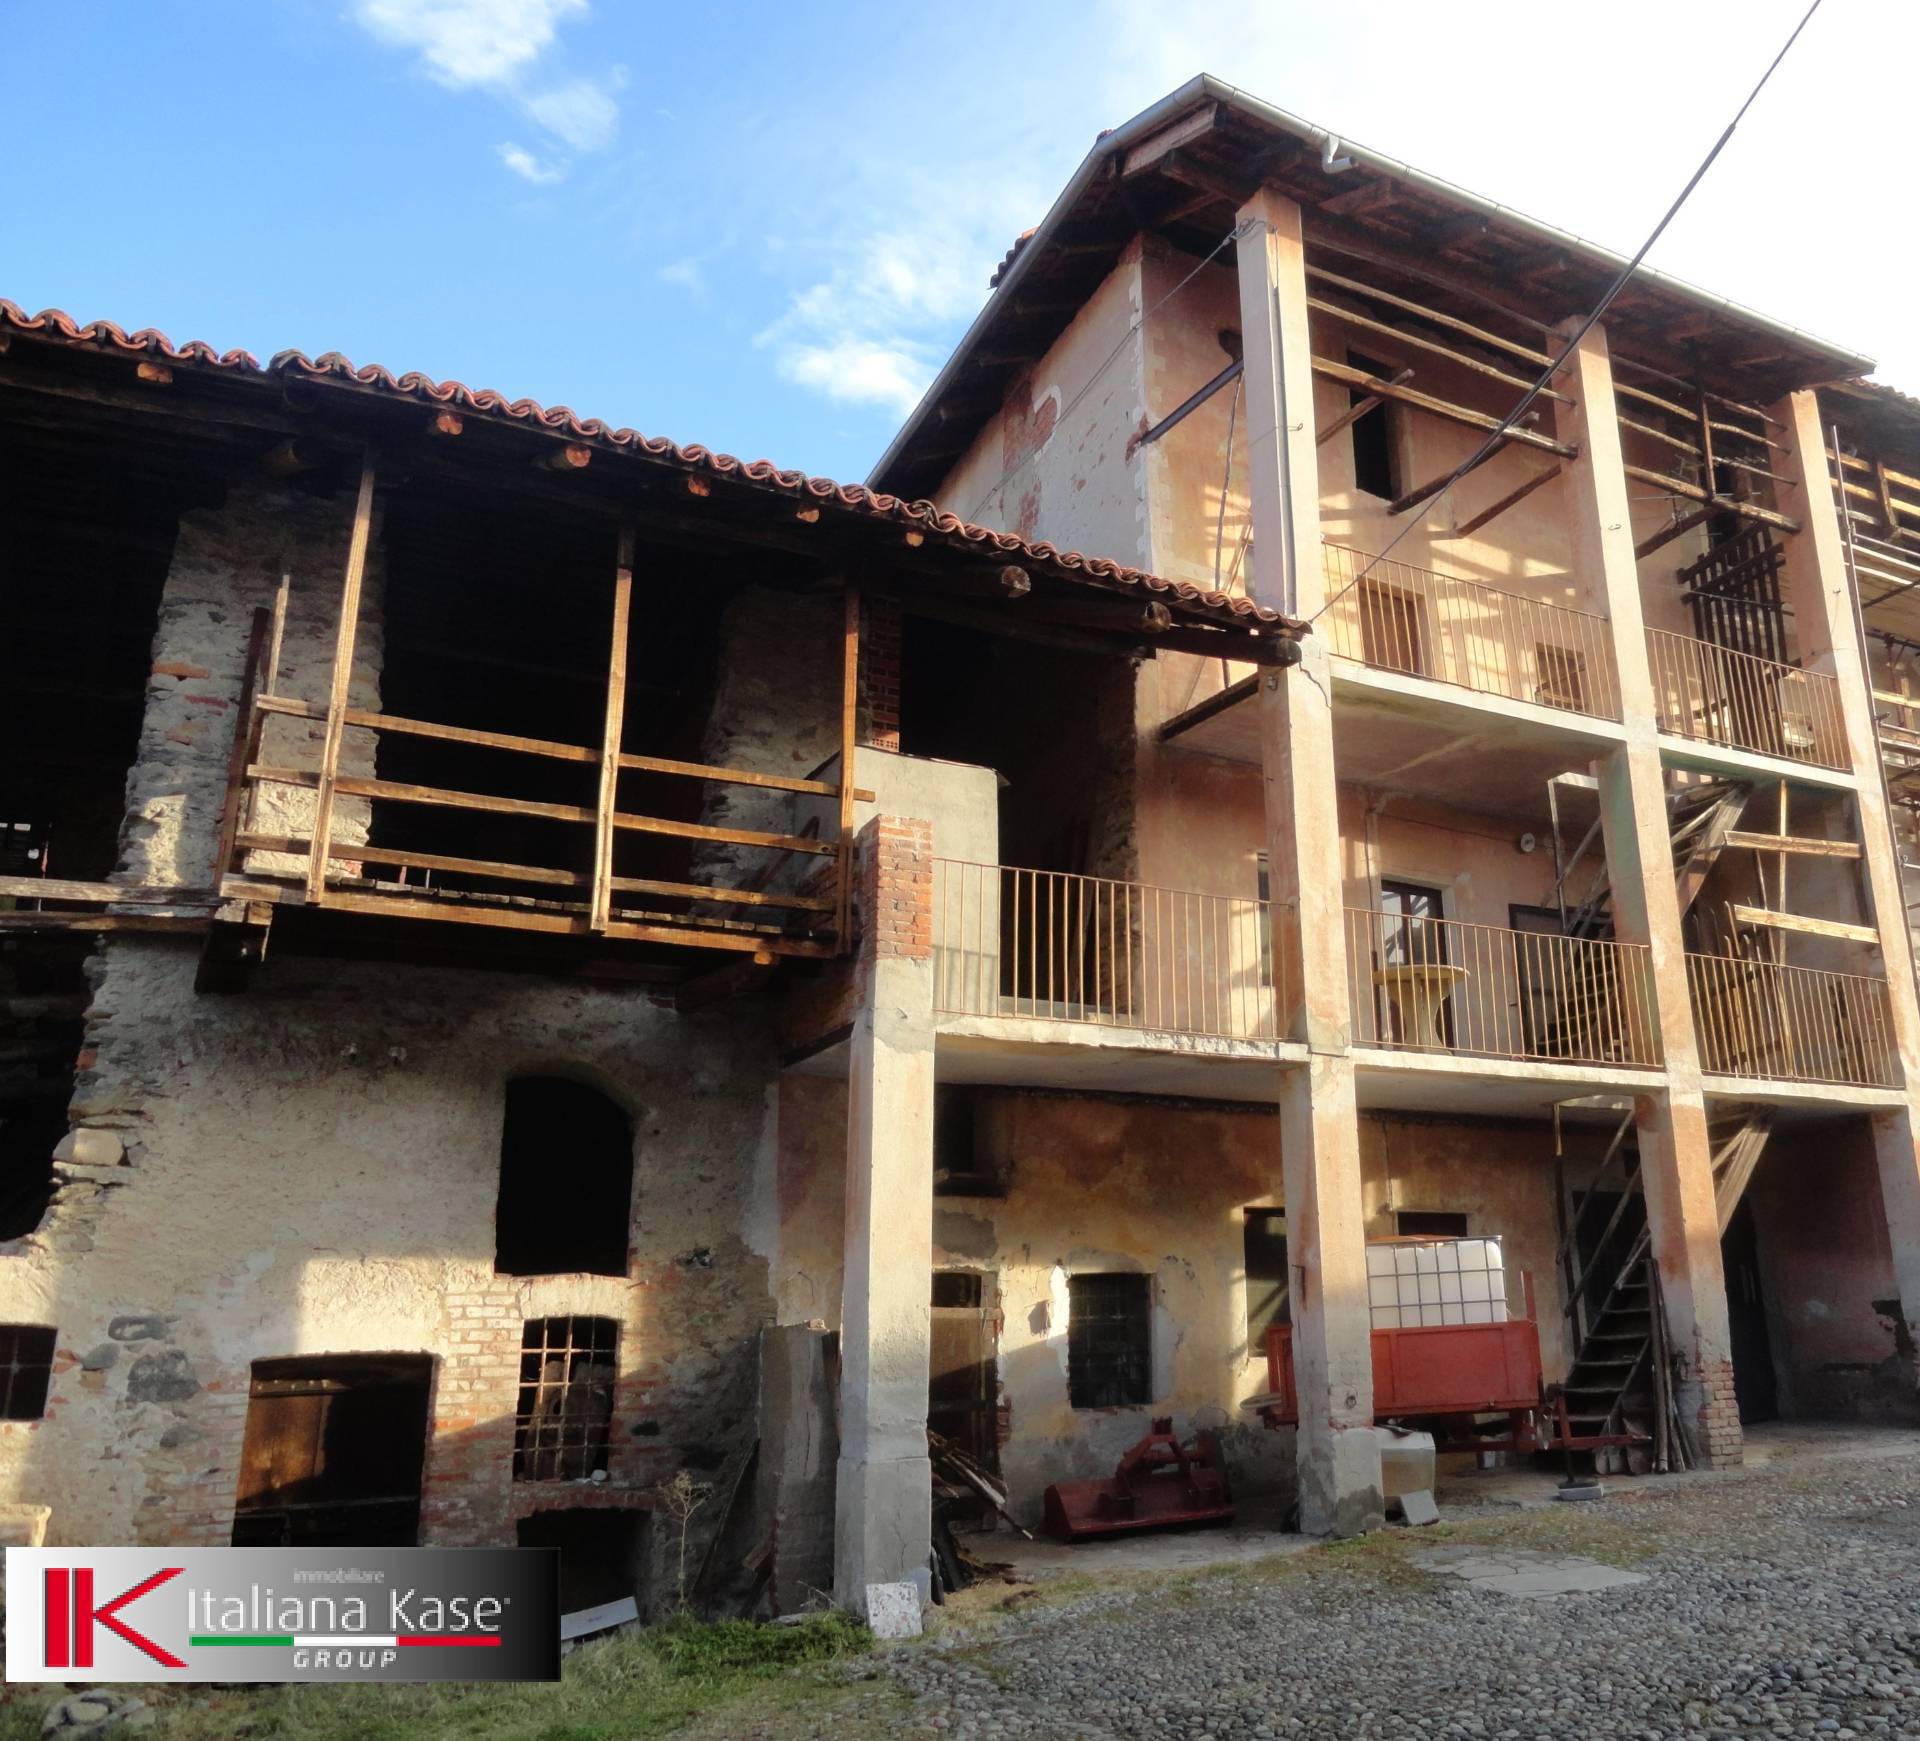 Rustico / Casale in vendita a Cuceglio, 6 locali, prezzo € 32.000 | PortaleAgenzieImmobiliari.it